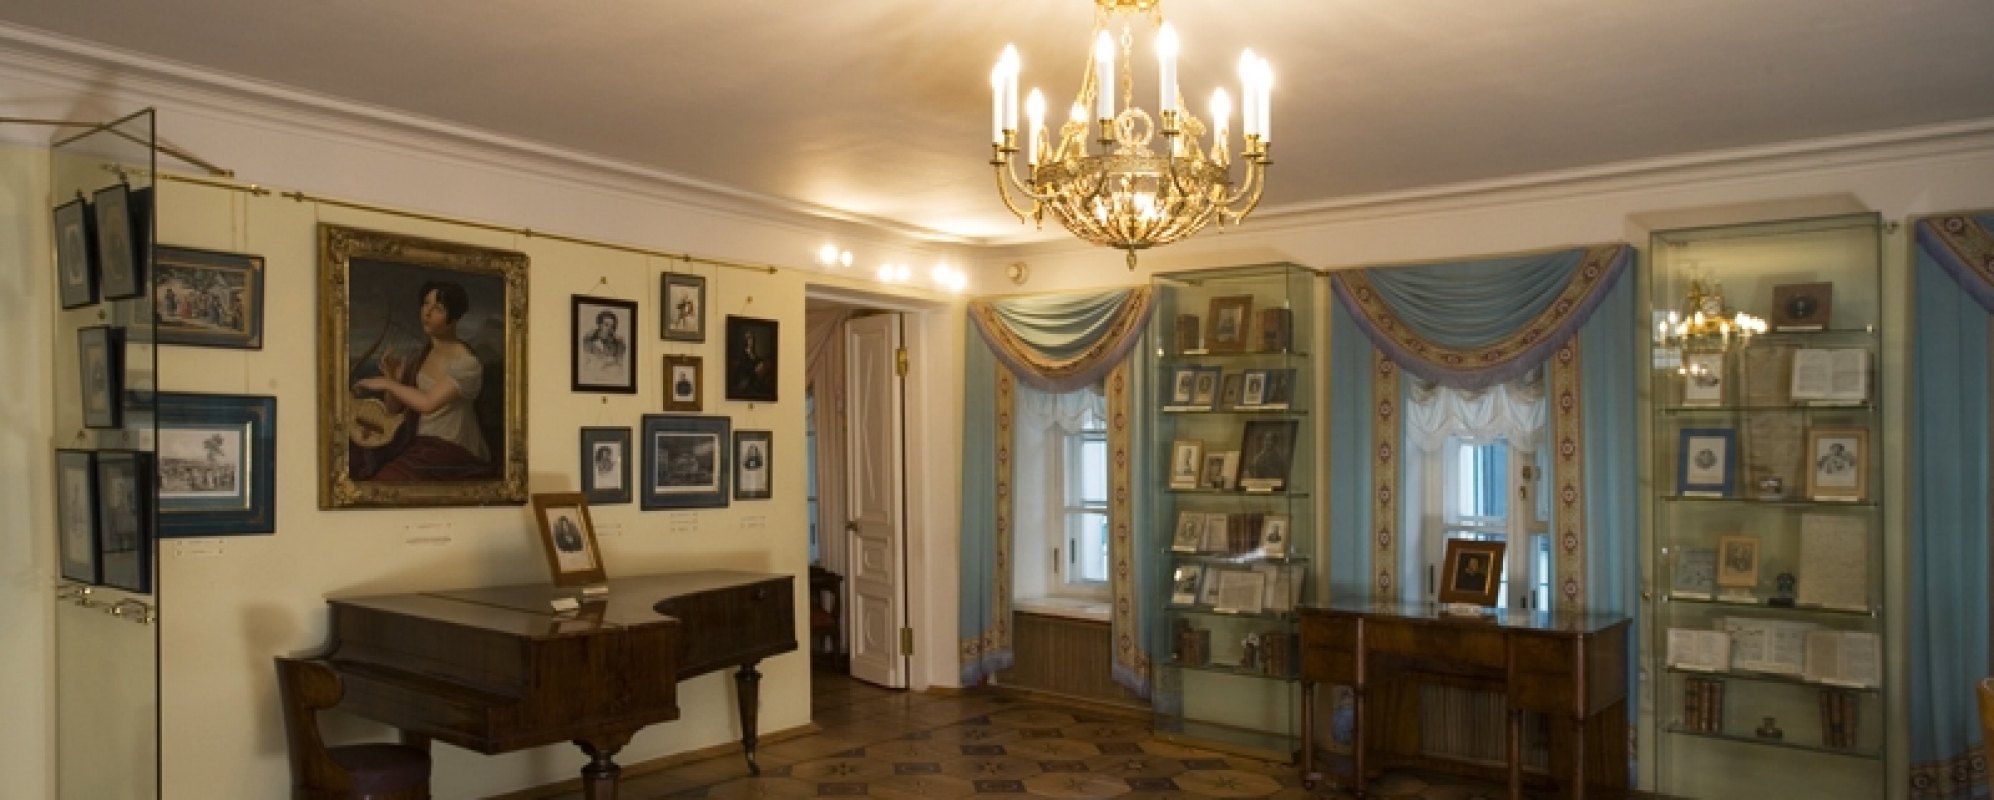 музей пушкина синий зал